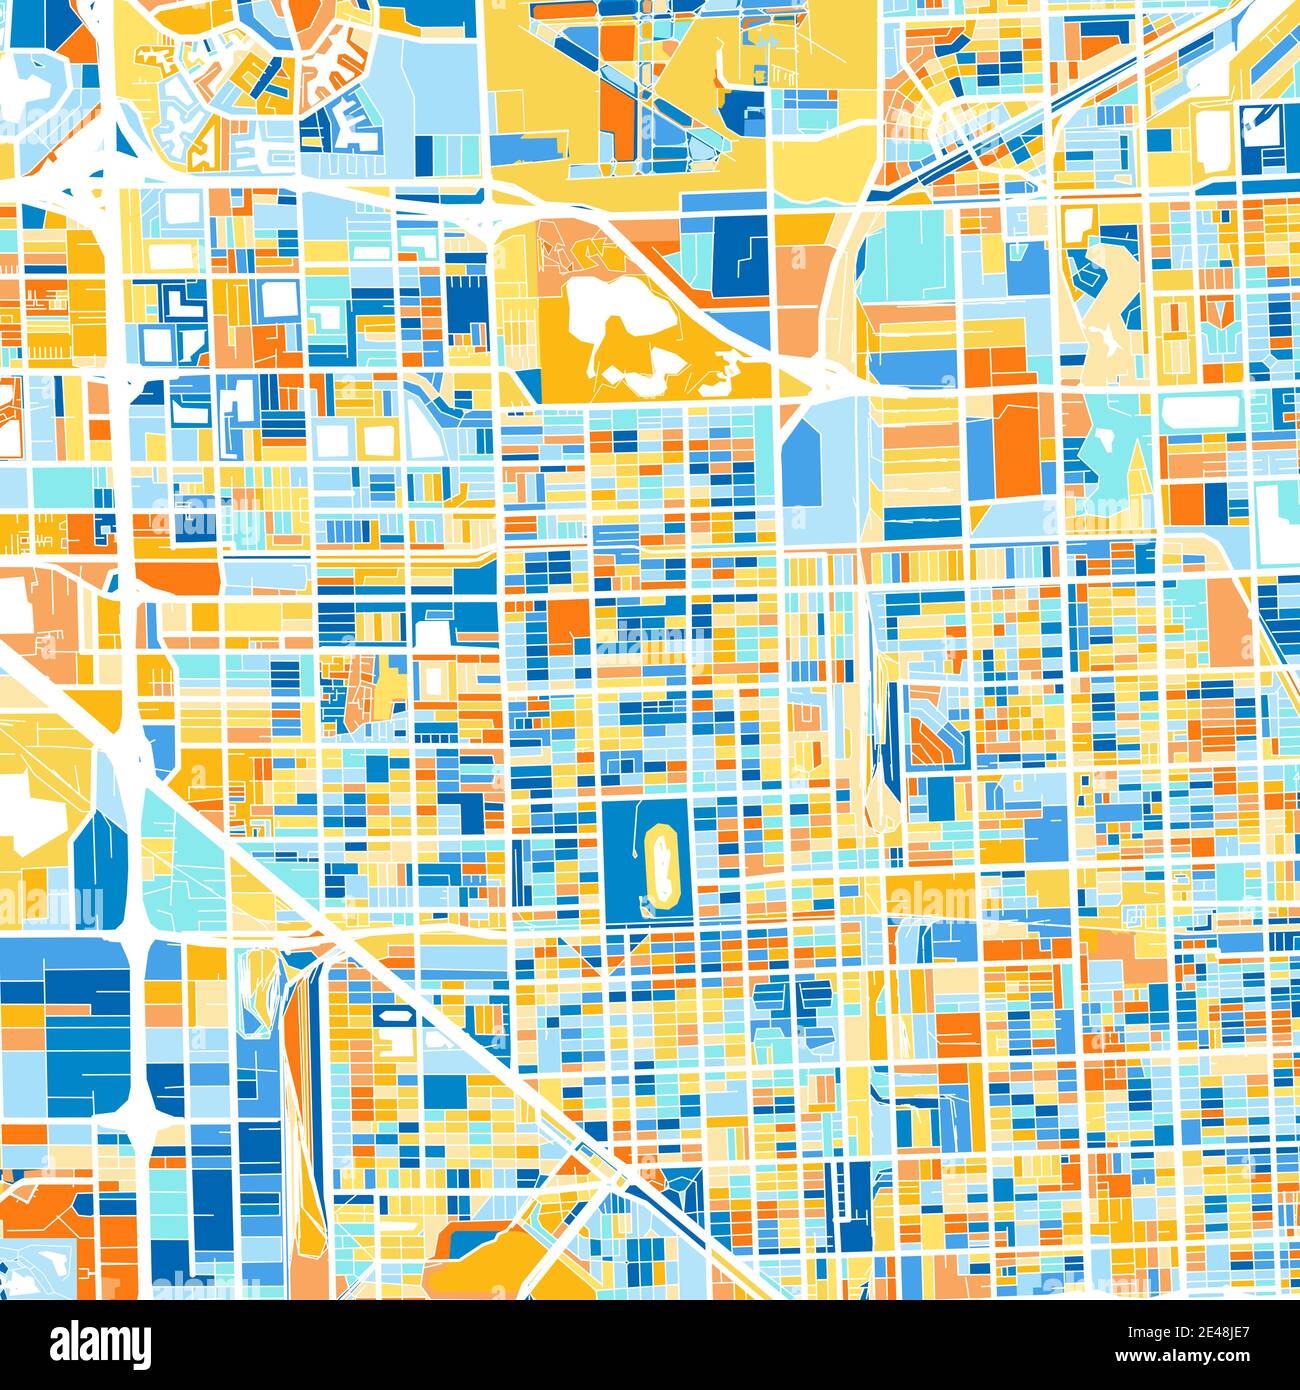 Mappa artistica a colori di Hialeah, Florida, Stati Uniti in blu e arance. Le gradazioni di colore nella mappa di Hialeah seguono un motivo casuale. Illustrazione Vettoriale